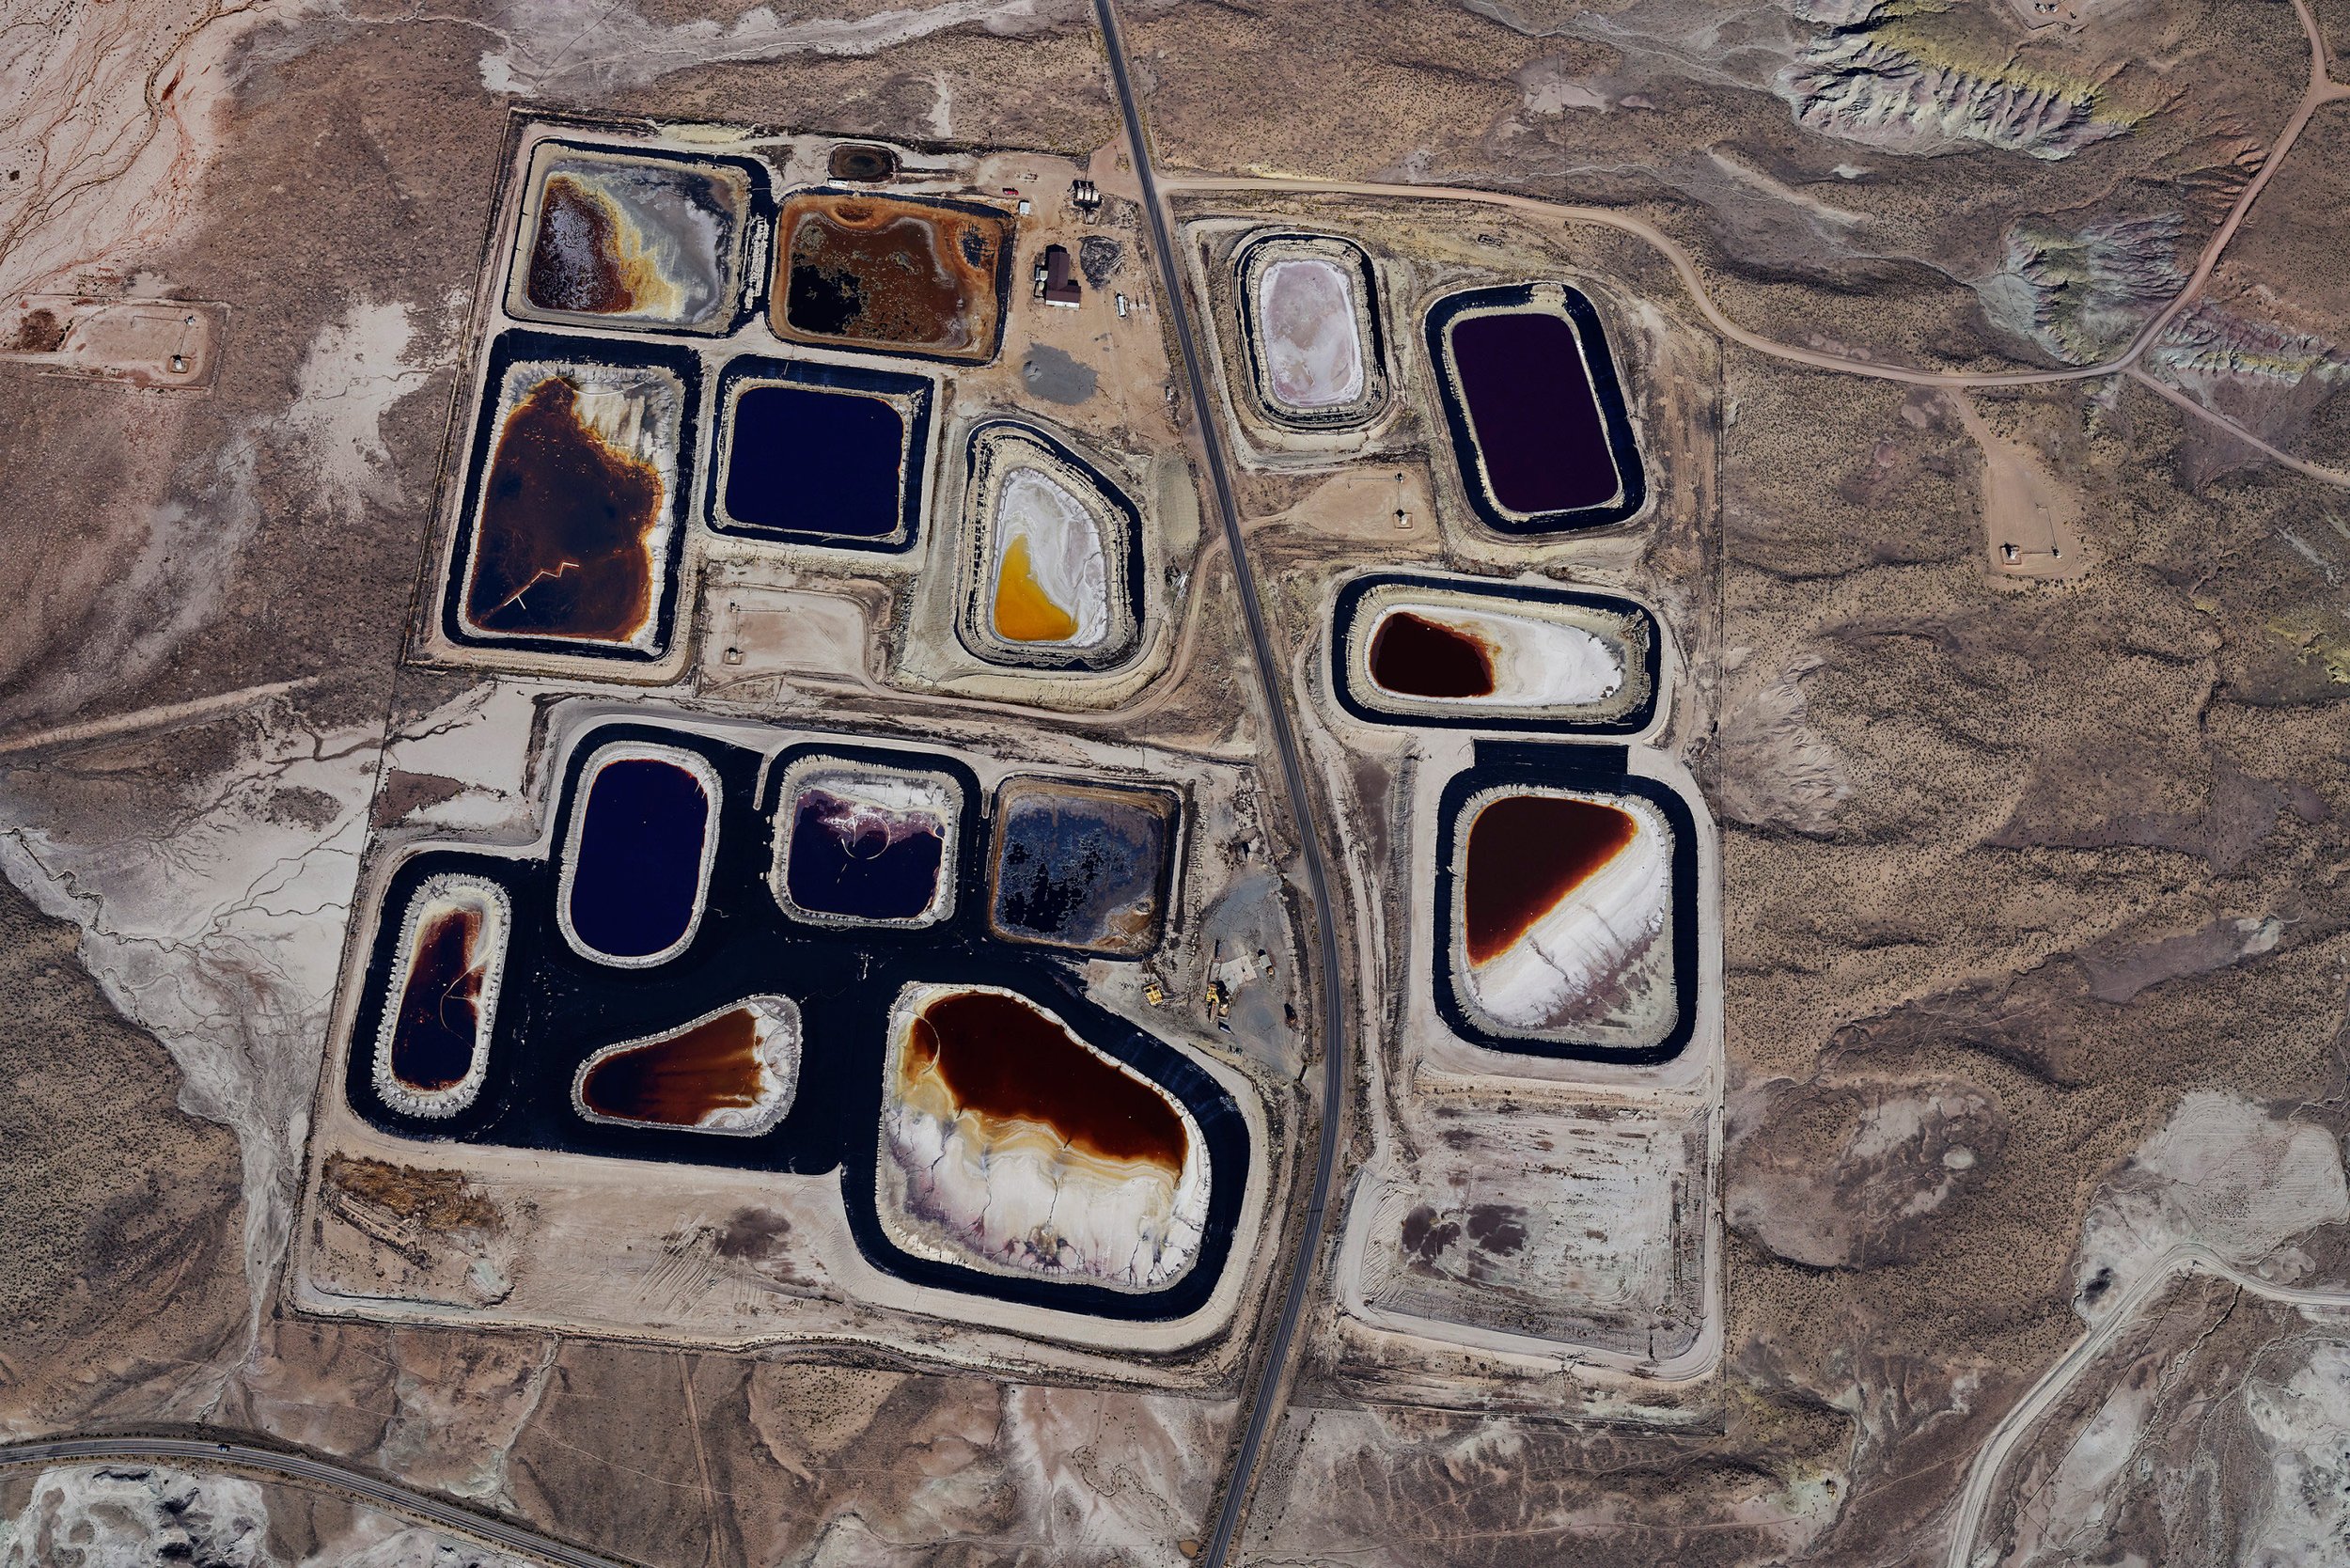 Chapita Wells Oil and Gas Field, Uintah Range, Utah, 40°4'10"N/109°27'26"W, from the series Exposure, 2017